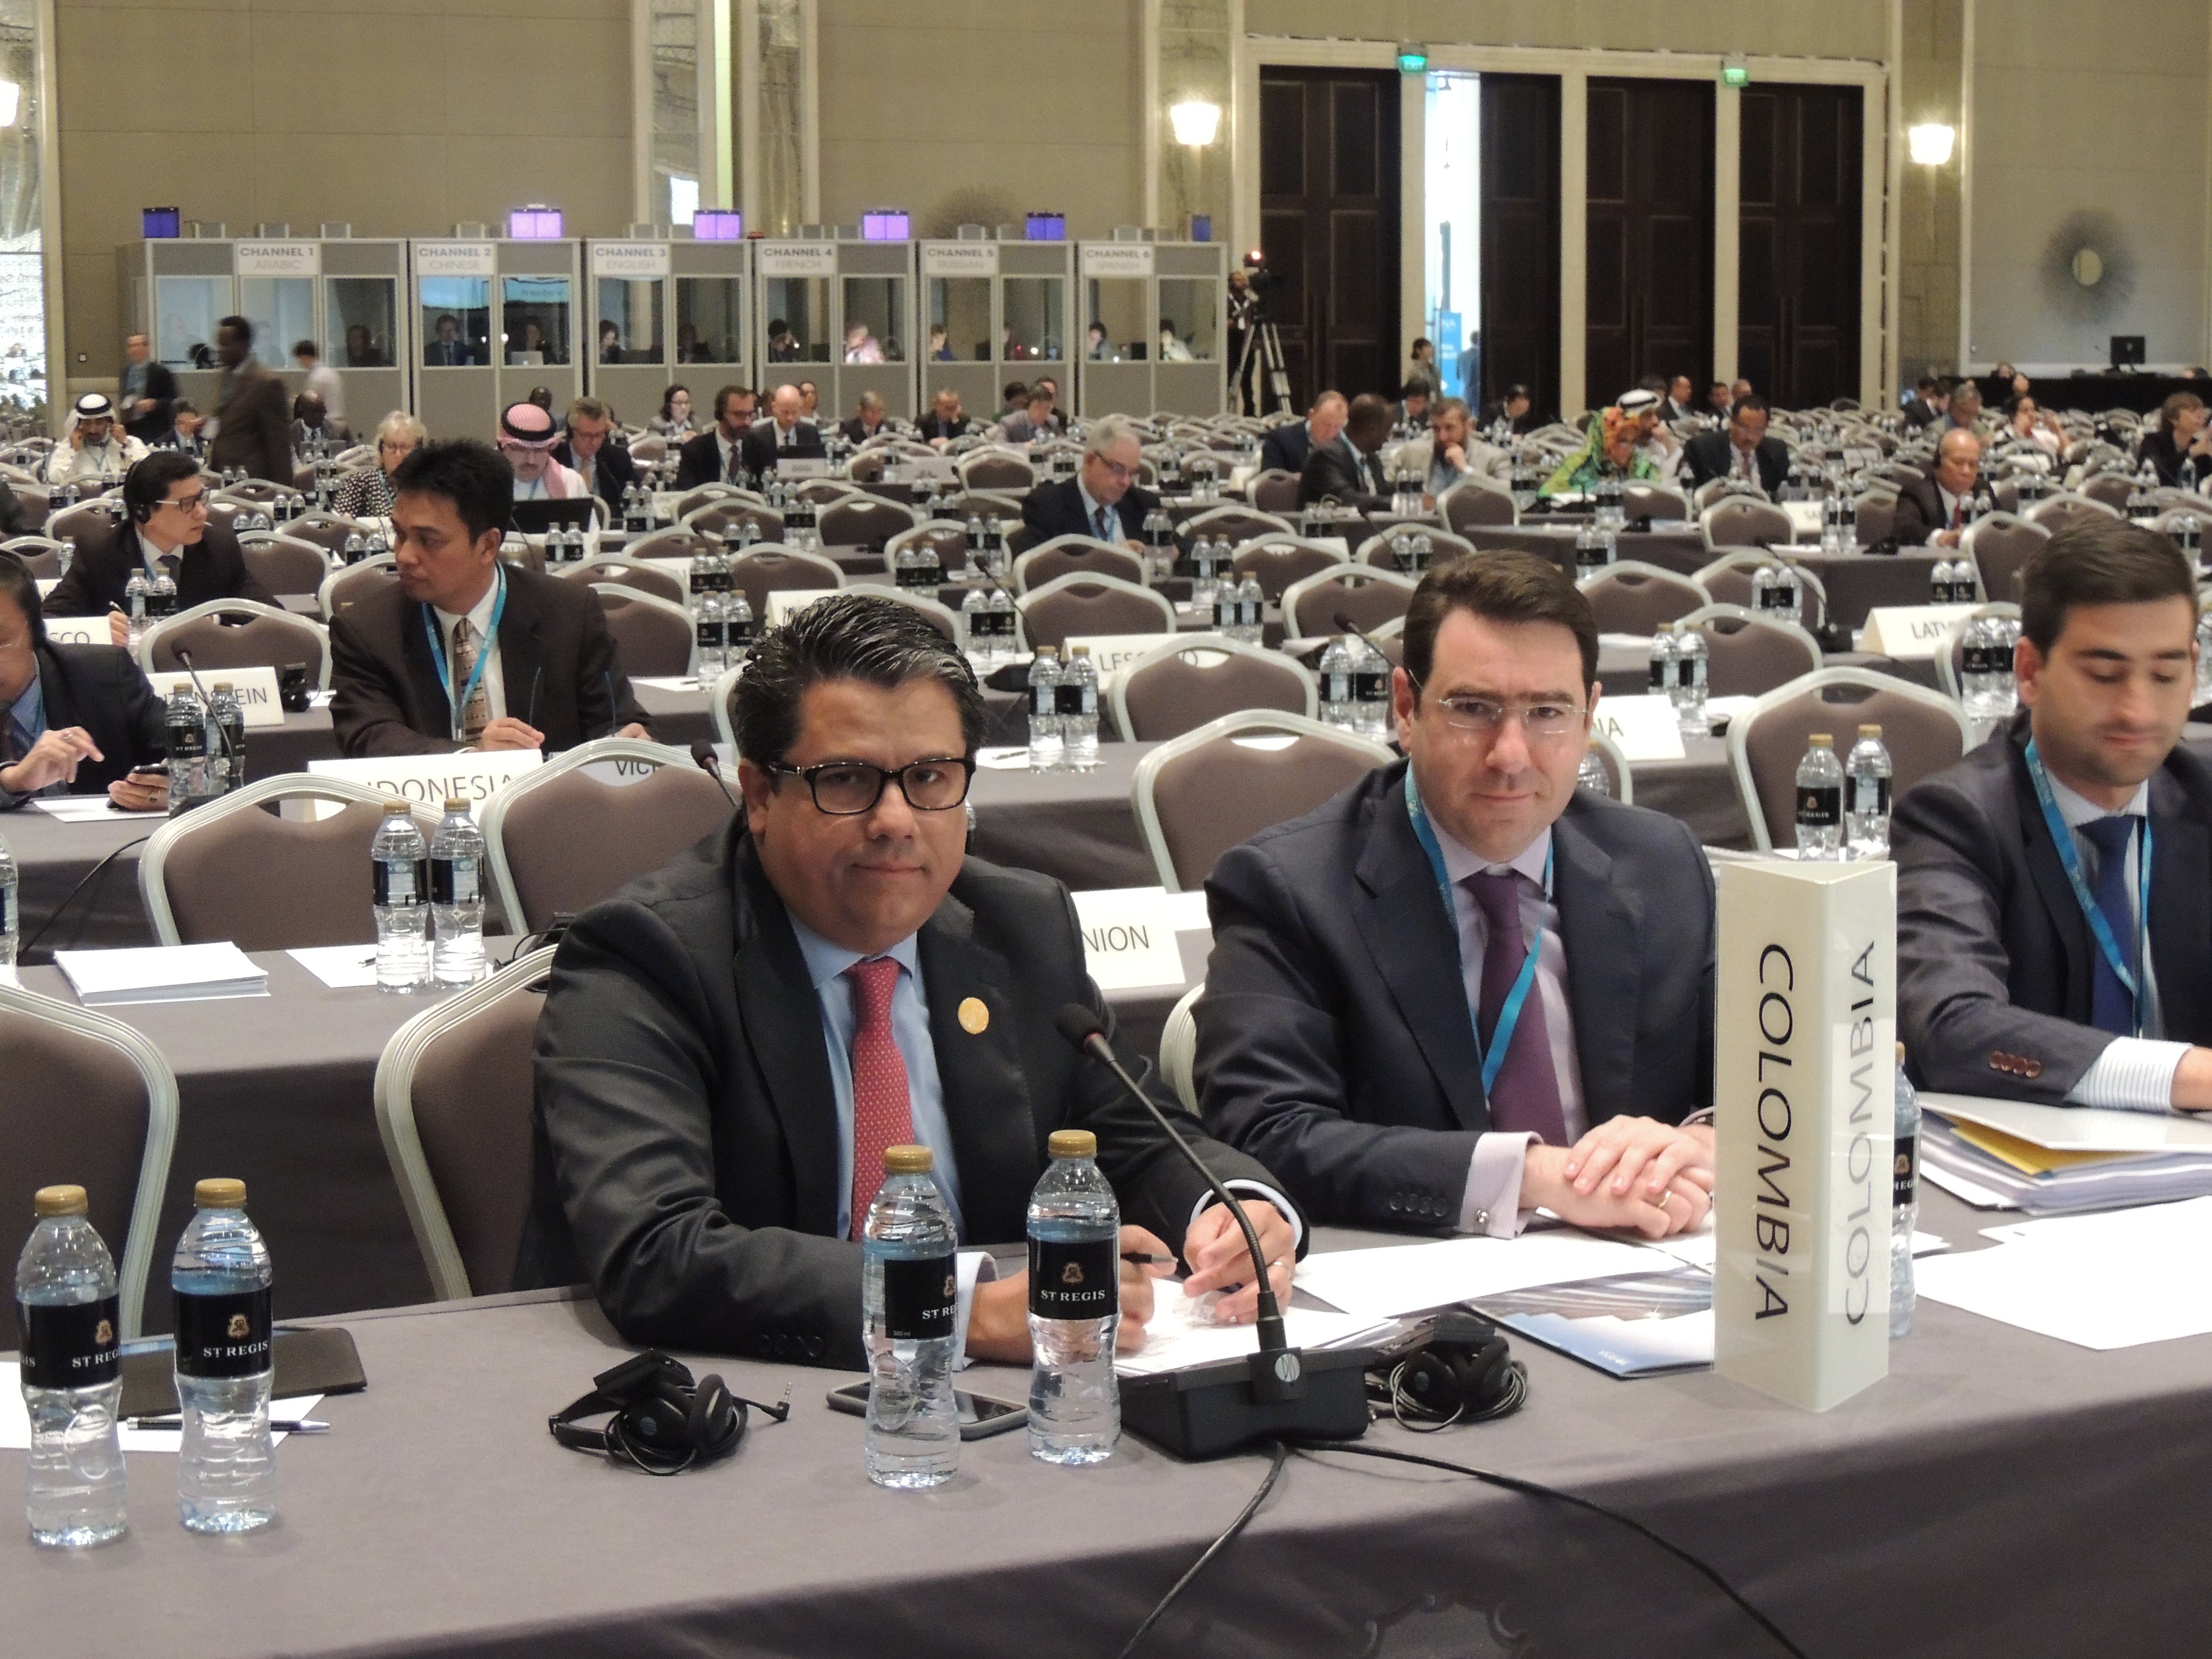 Configurar Colombia fue Elegido miembro del Consejo de la Agencia Internacional de Energías Renovables – IRENA para el periodo 2017-2018 y anunció su intención de ser el Vicepresidente del Consejo 